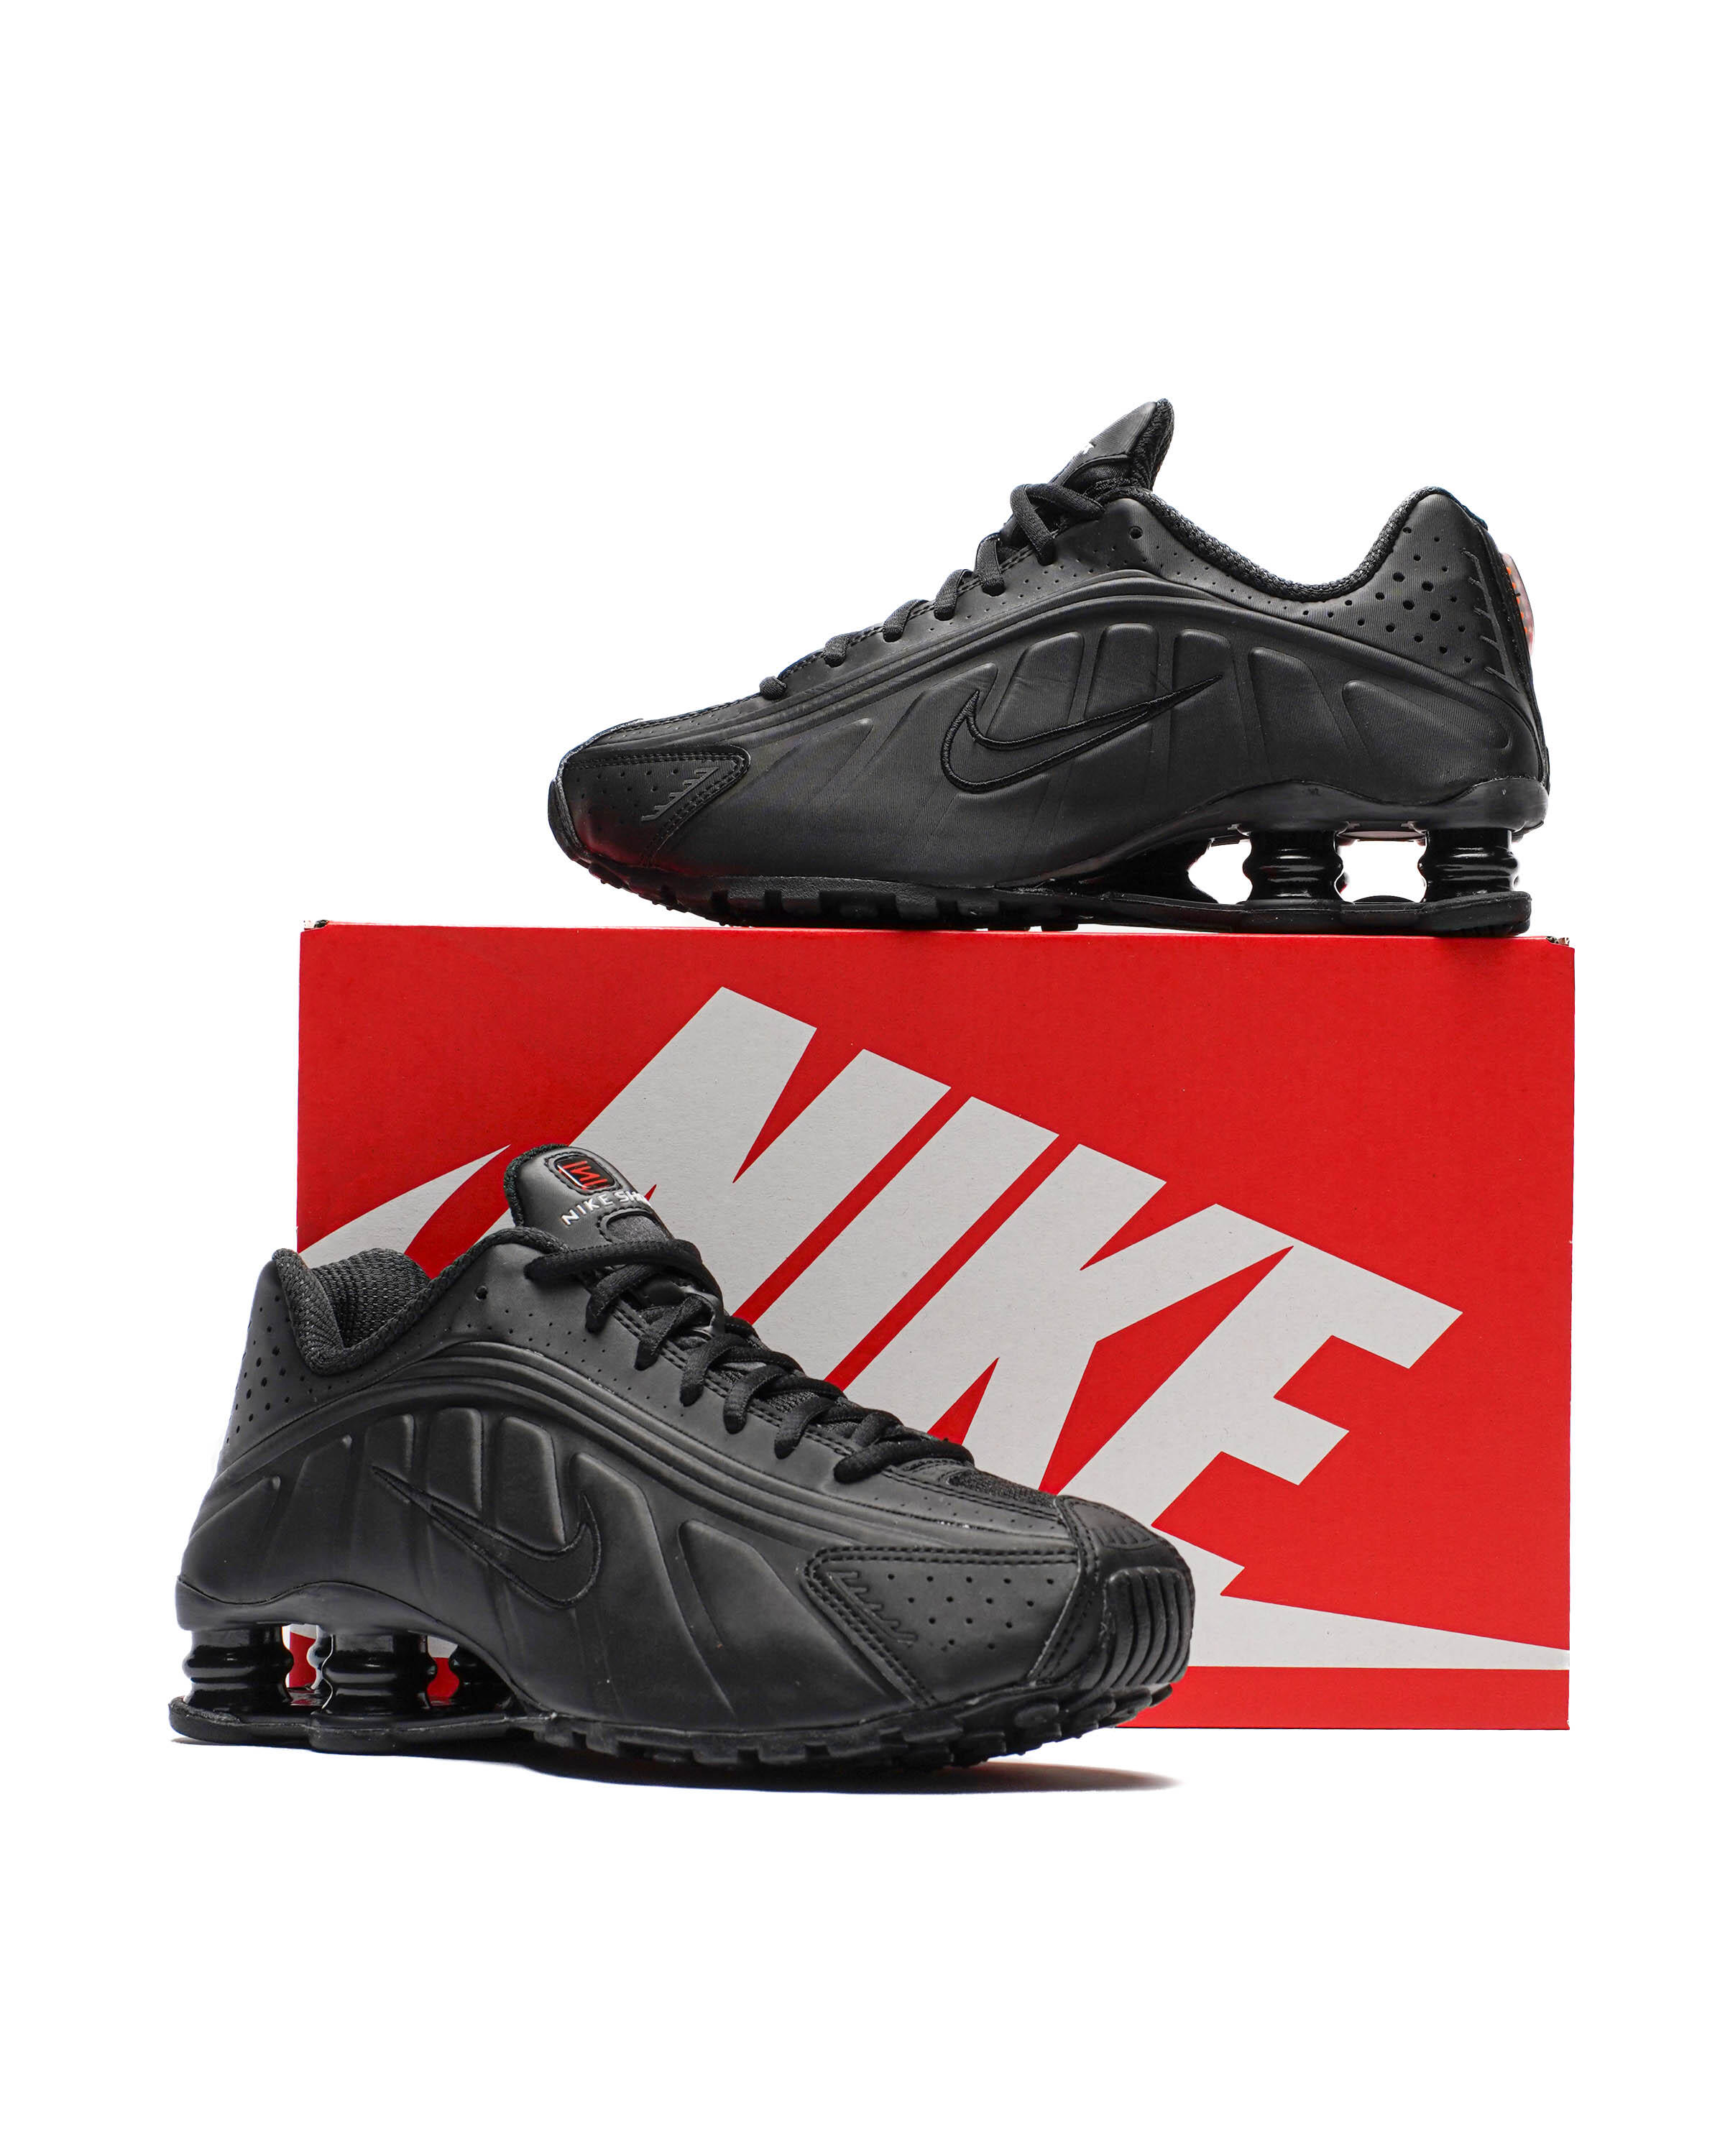 Nike WMNS SHOX R4